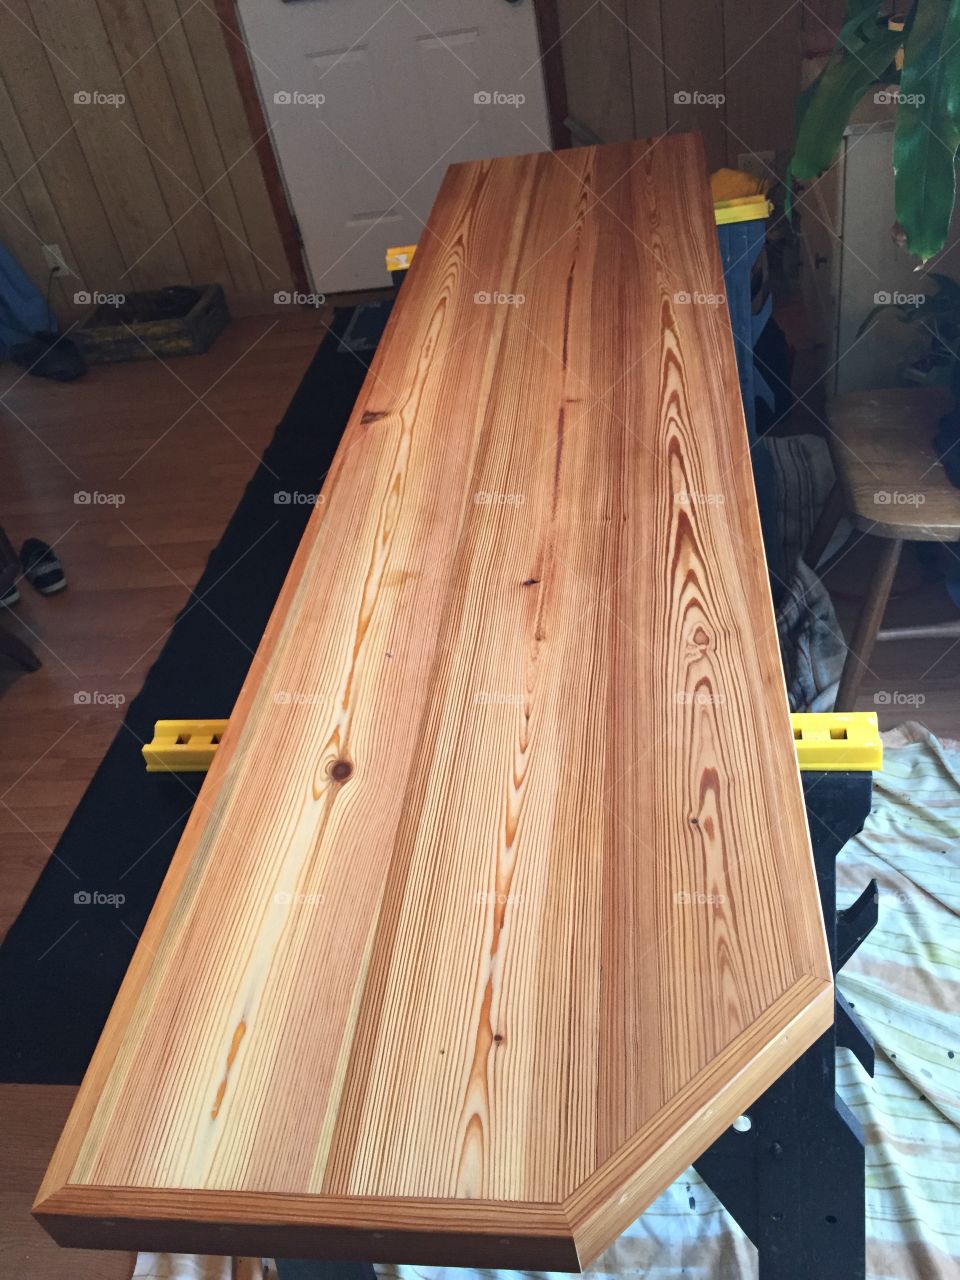 Brand-new wooden countertop